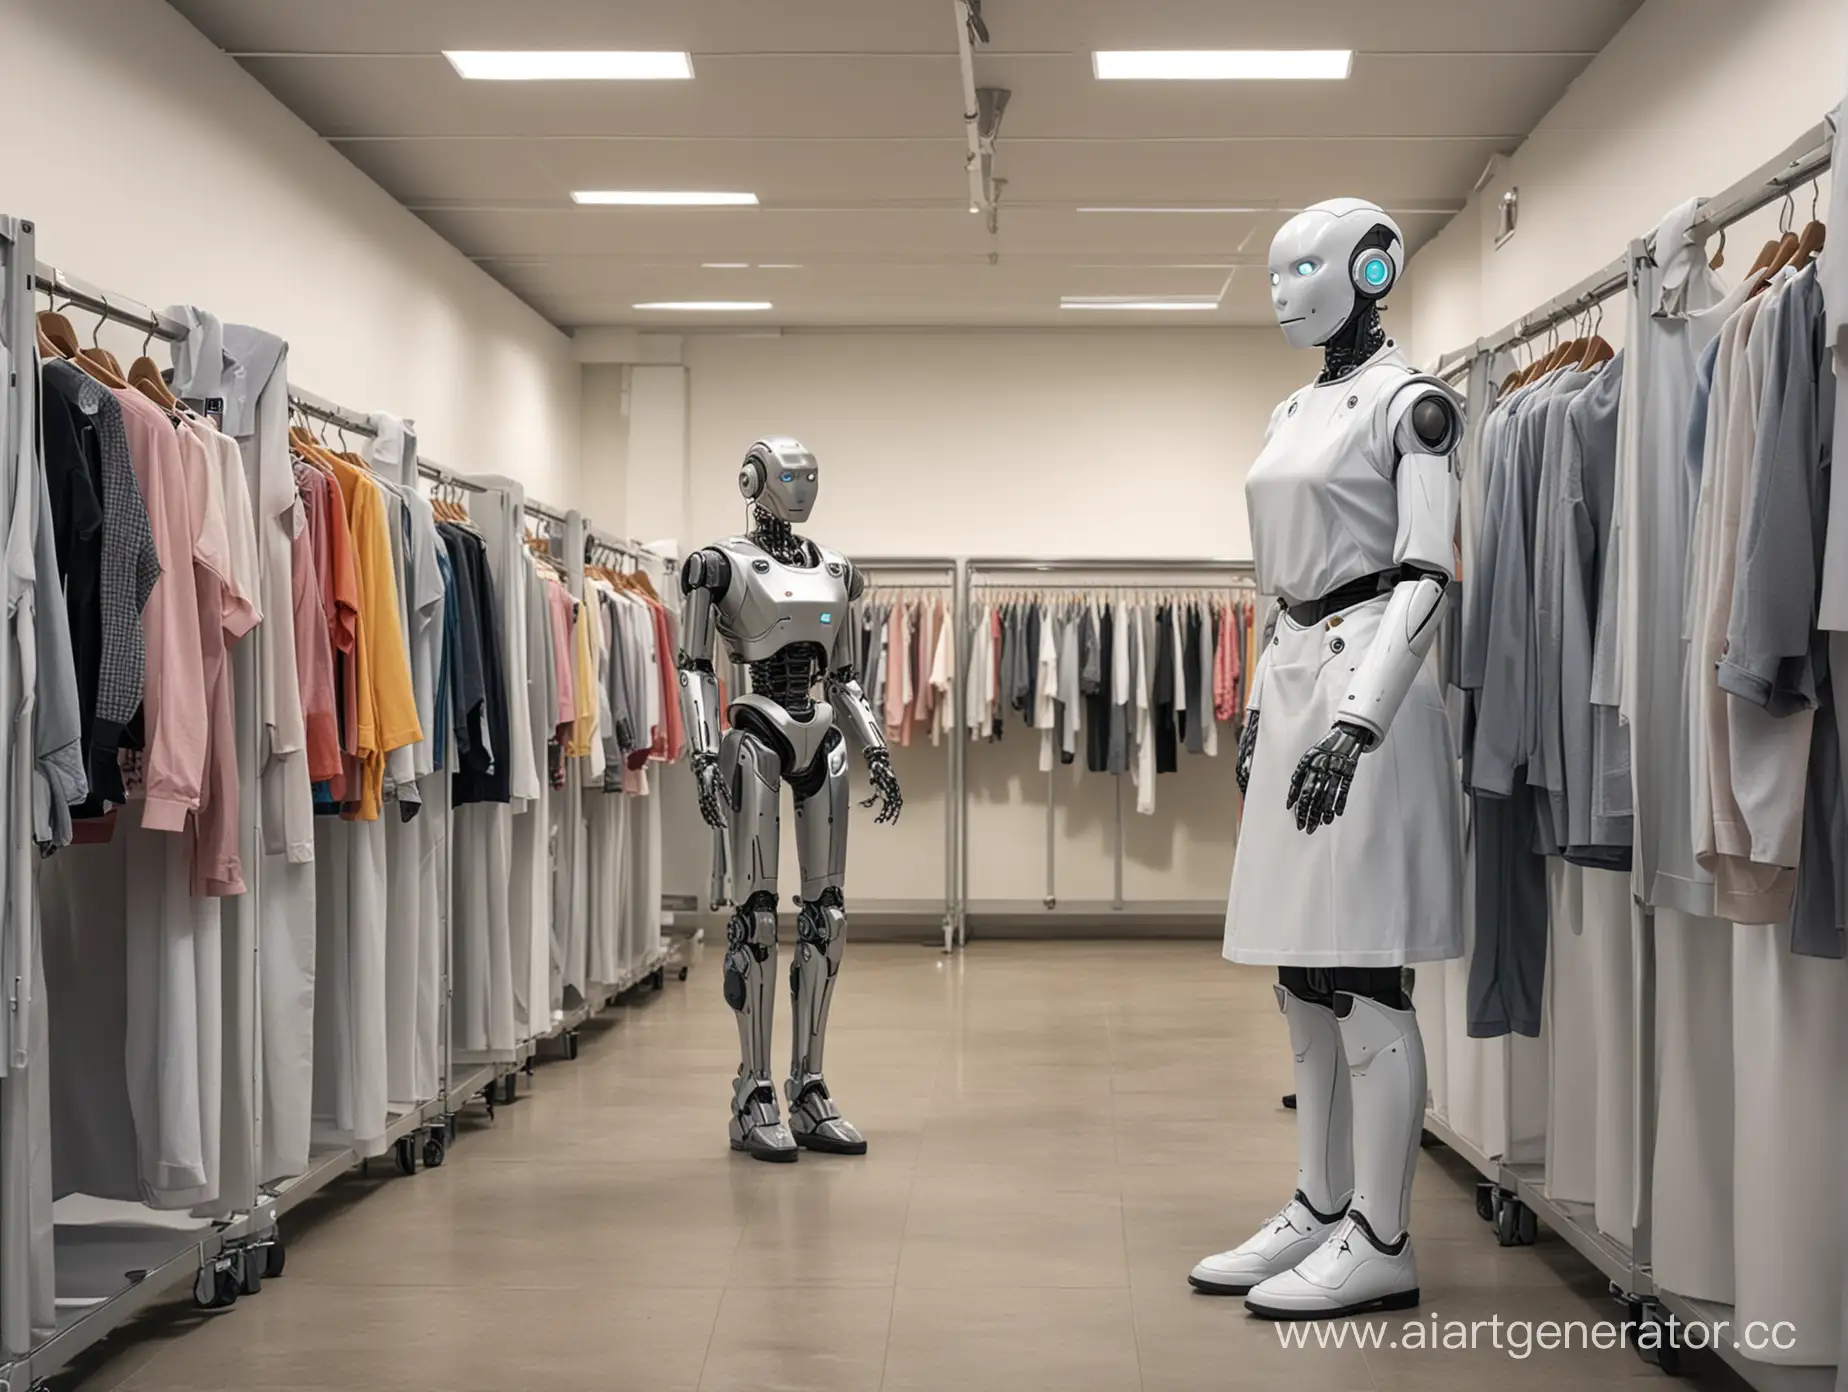 робот гардеробщик принимает одежду у студентов и стоит в гардеробе развешивает одежду
